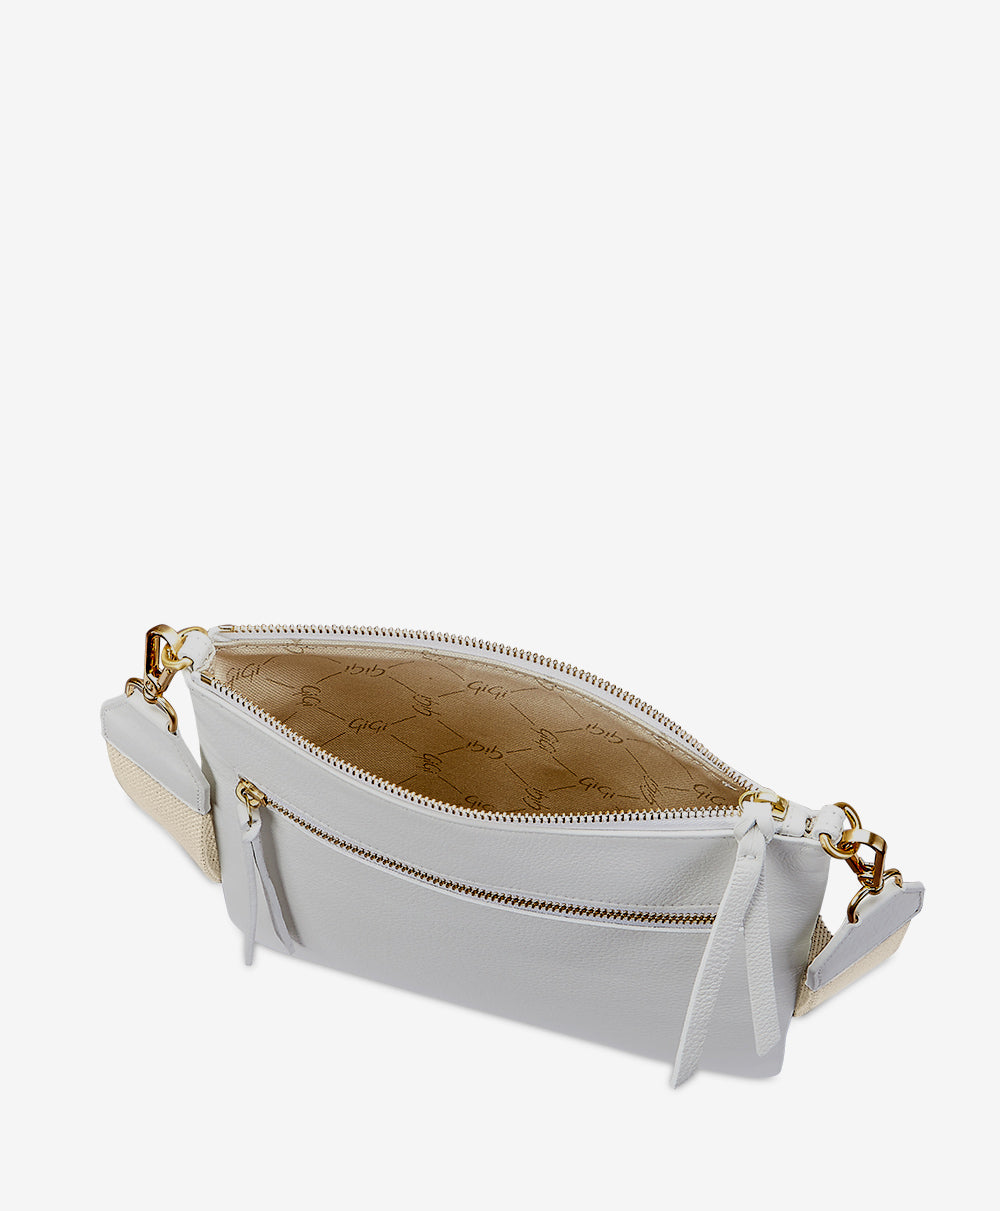 Kit Messenger Bag | White Pebble Grain Leather